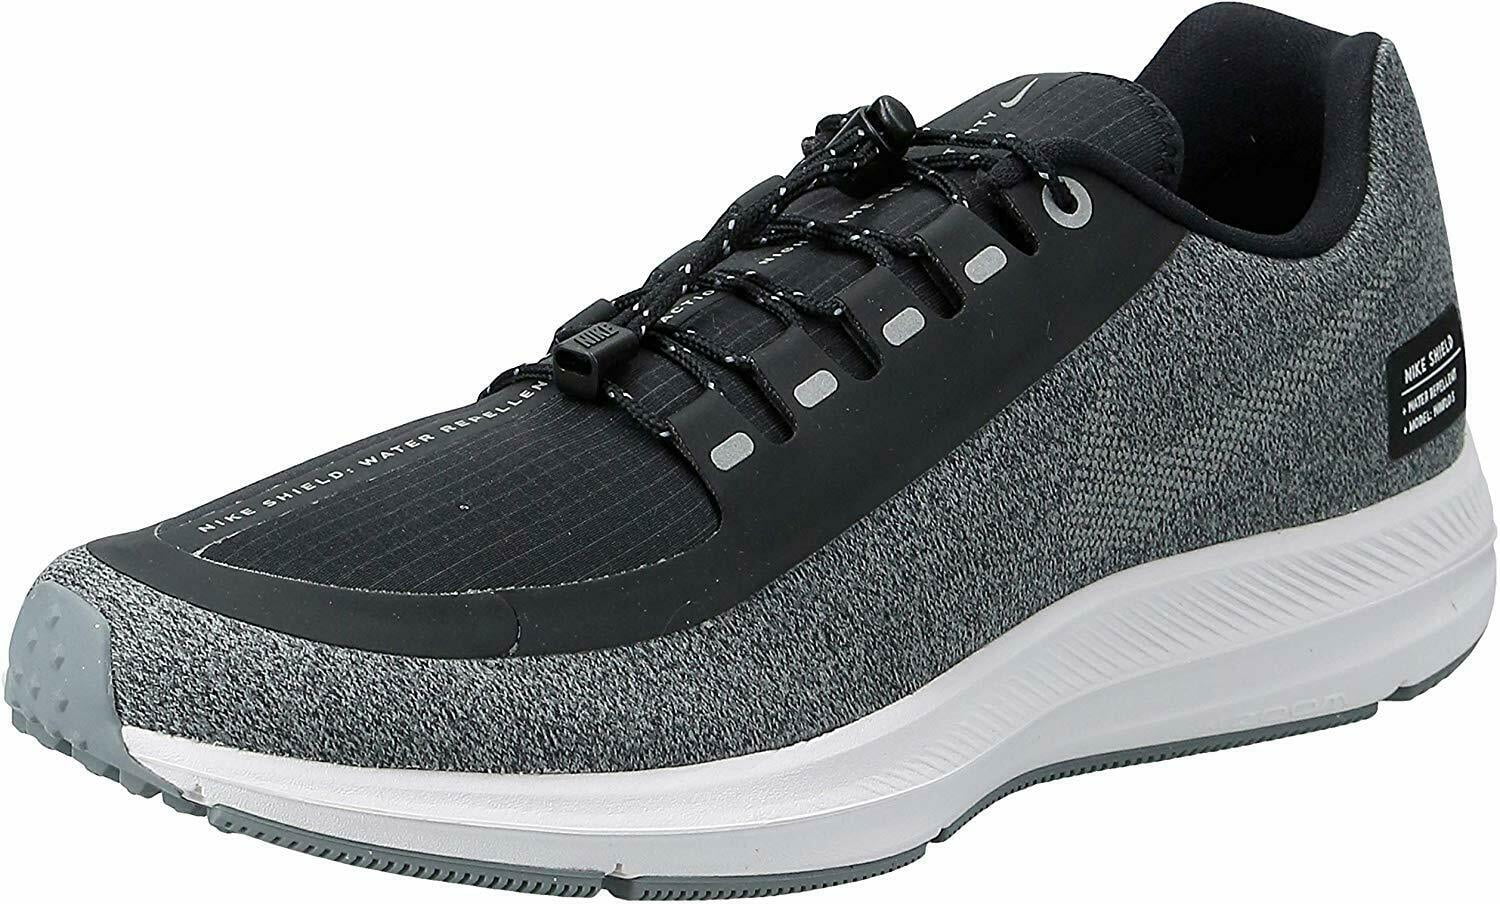 W Nike Zoom Winflo 5 Run Shield women's Shoe AO1573 001 Size 9 New in the  box - Walmart.com - Walmart.com